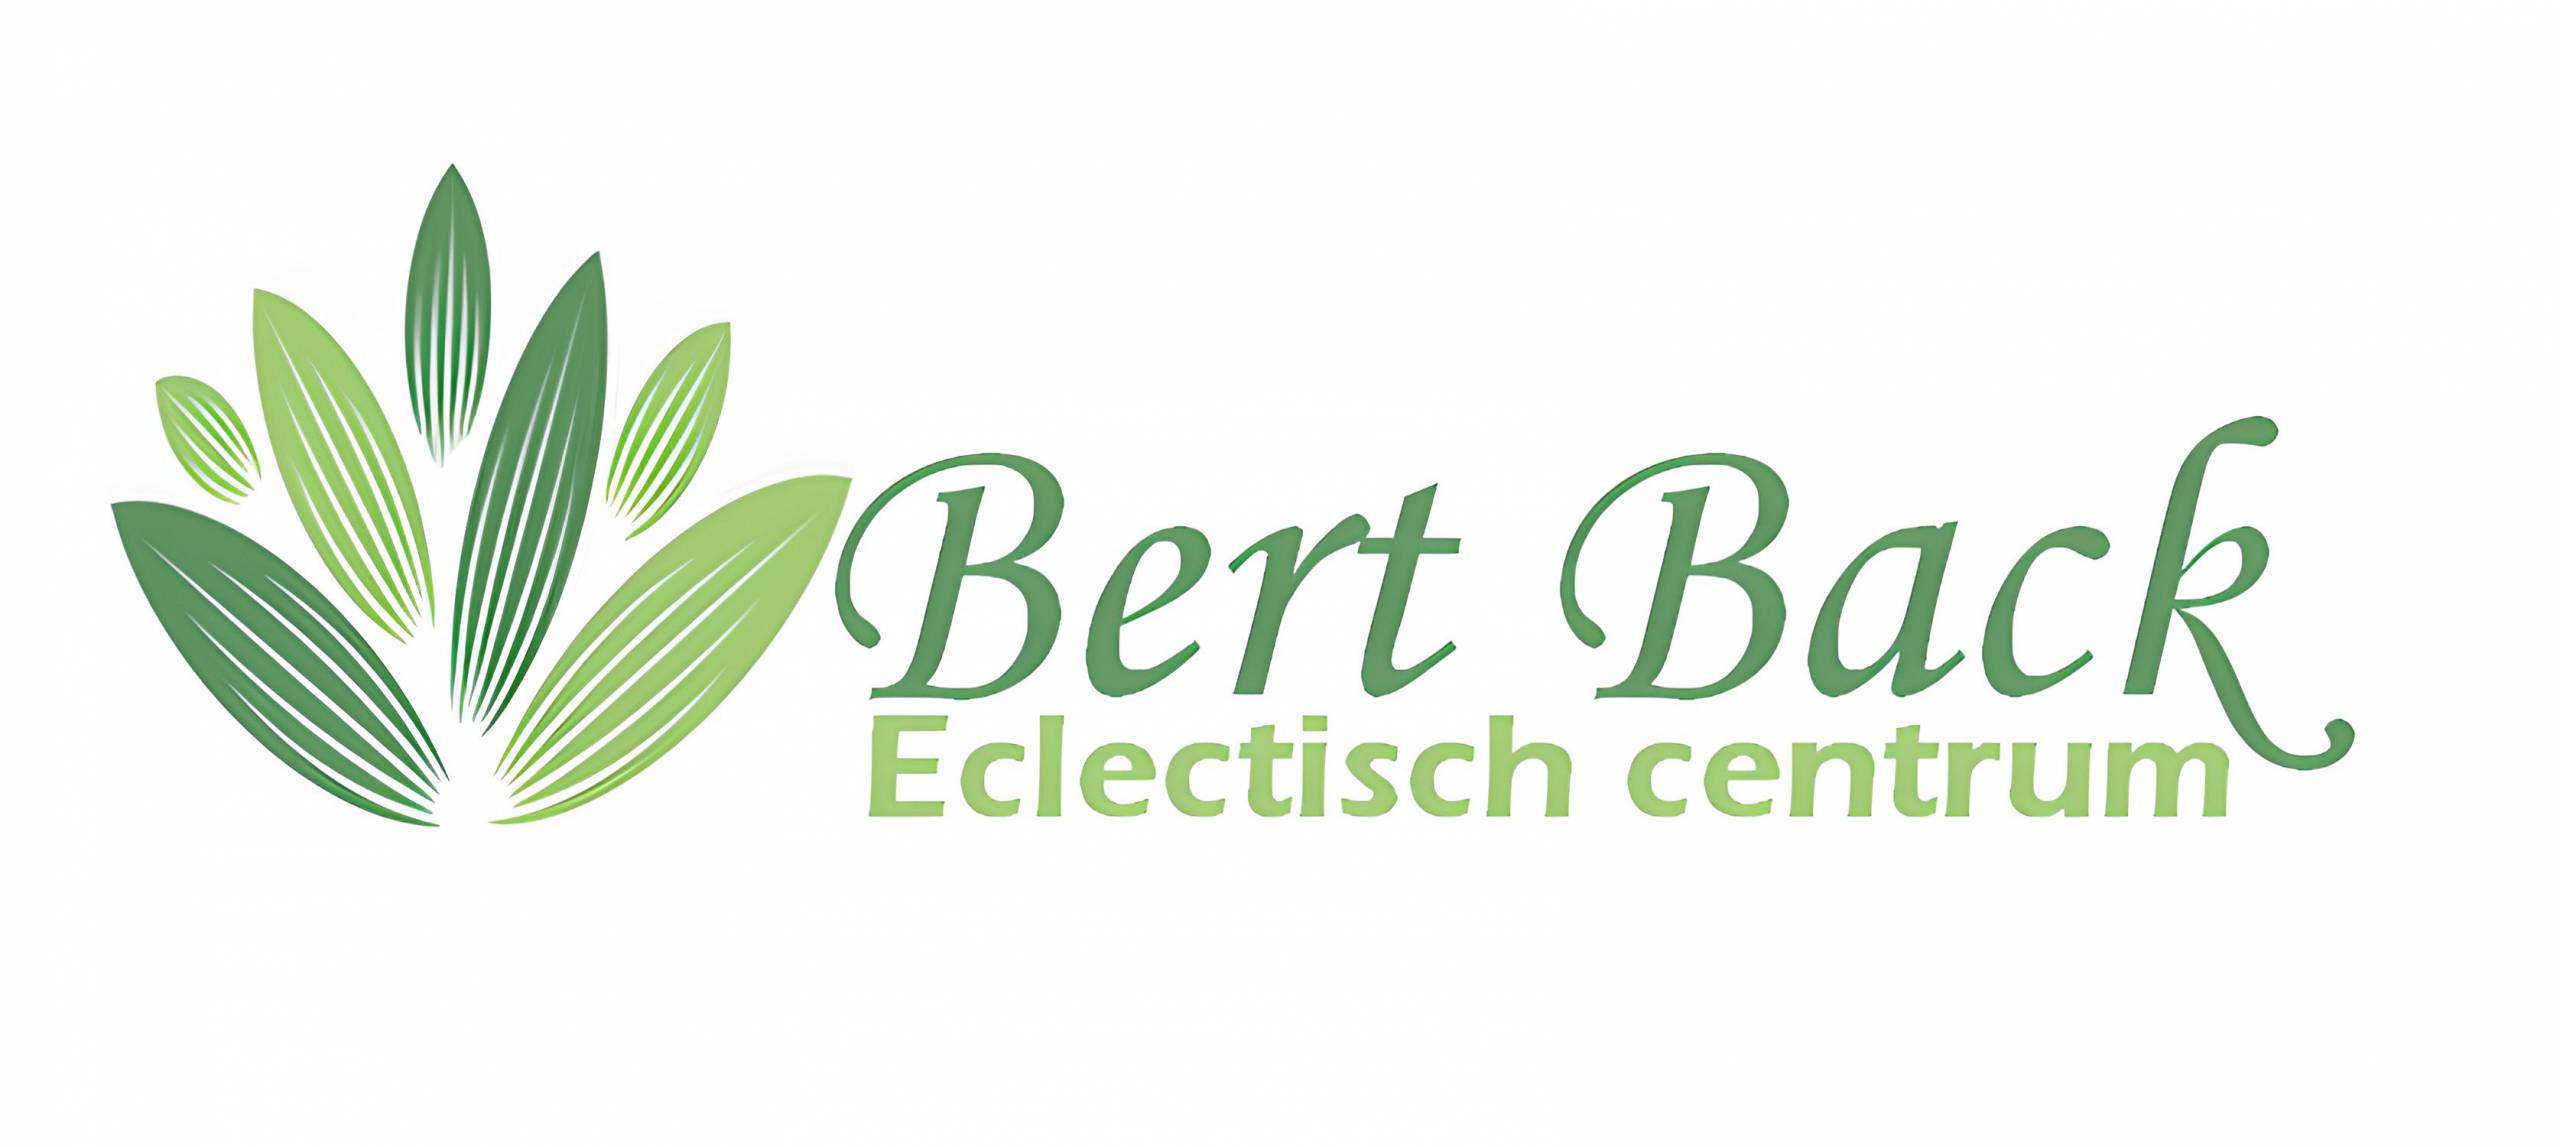 Eclectisch Centrum Bert Back